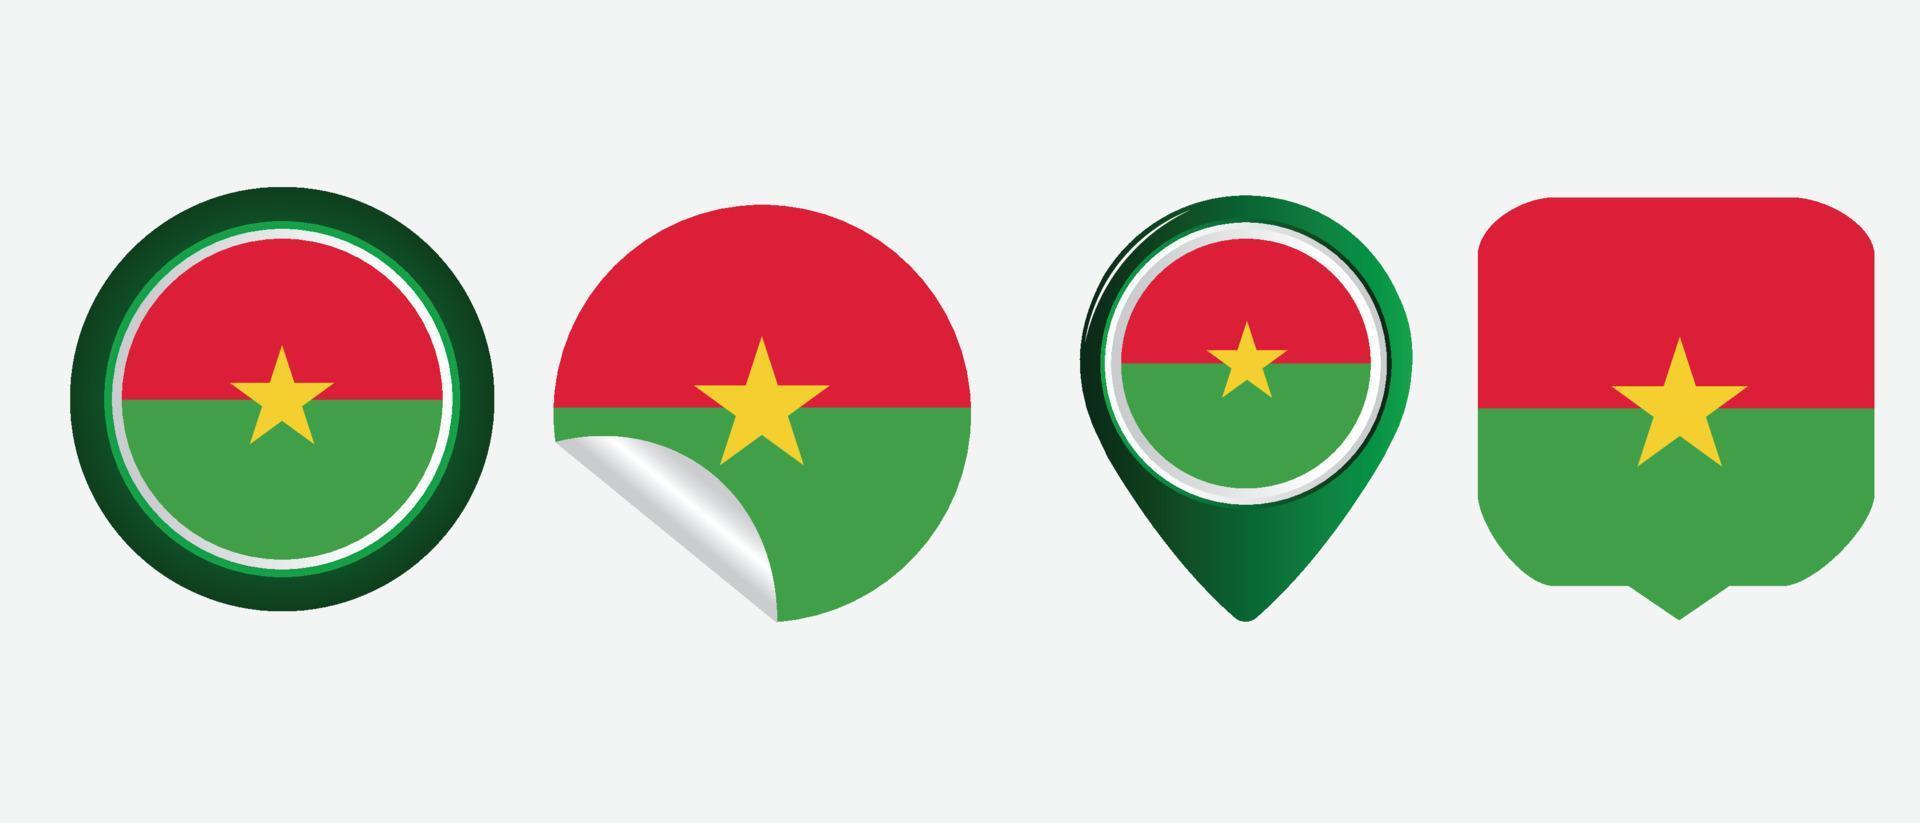 Burkina Faso flag. flat icon symbol vector illustration